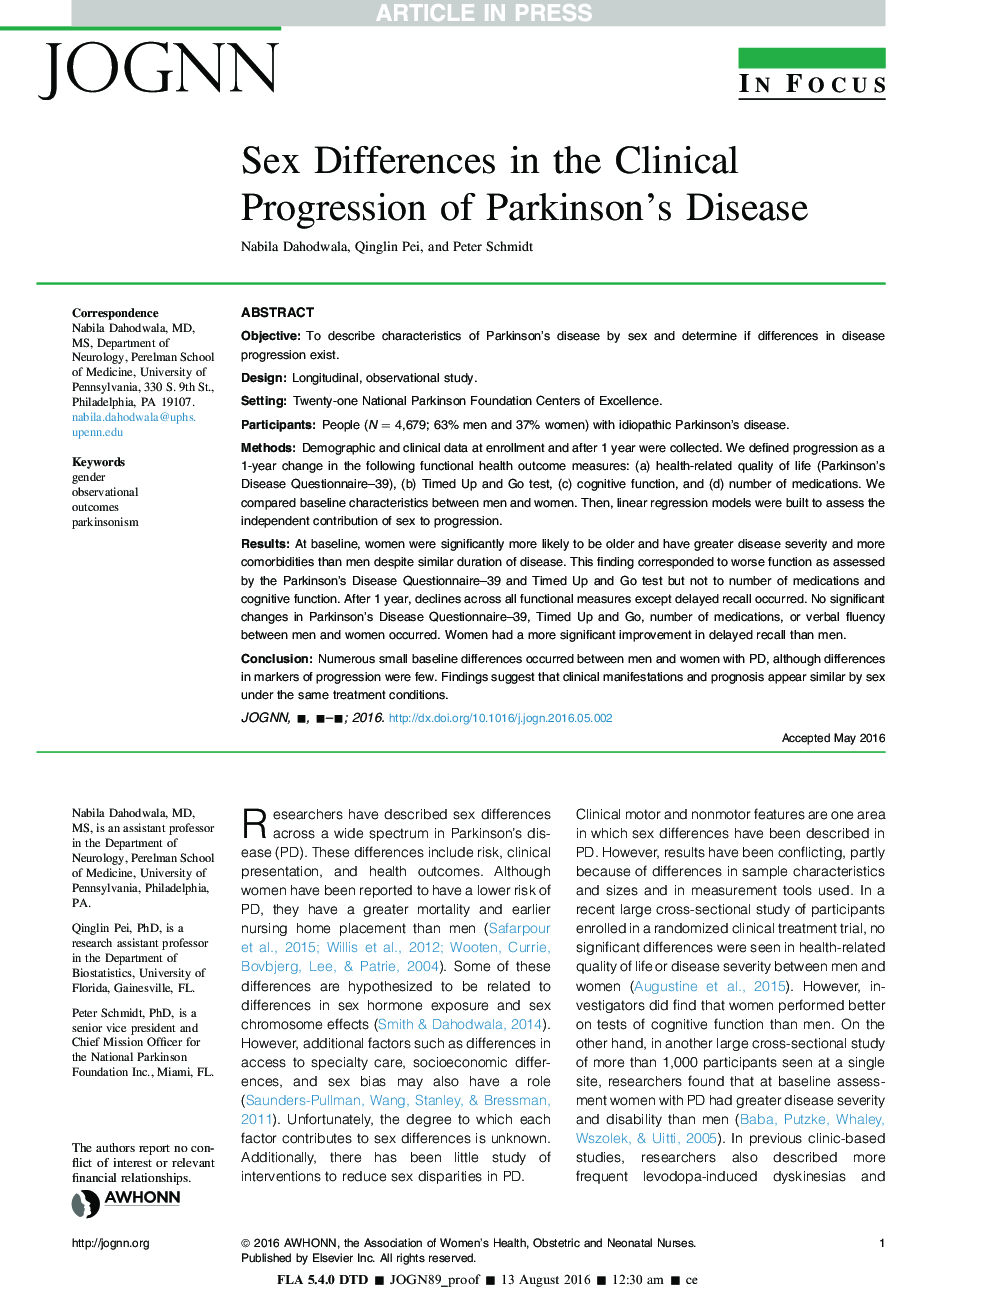 تفاوت های جنسی در پیشرفت بالینی بیماری پارکینسون 